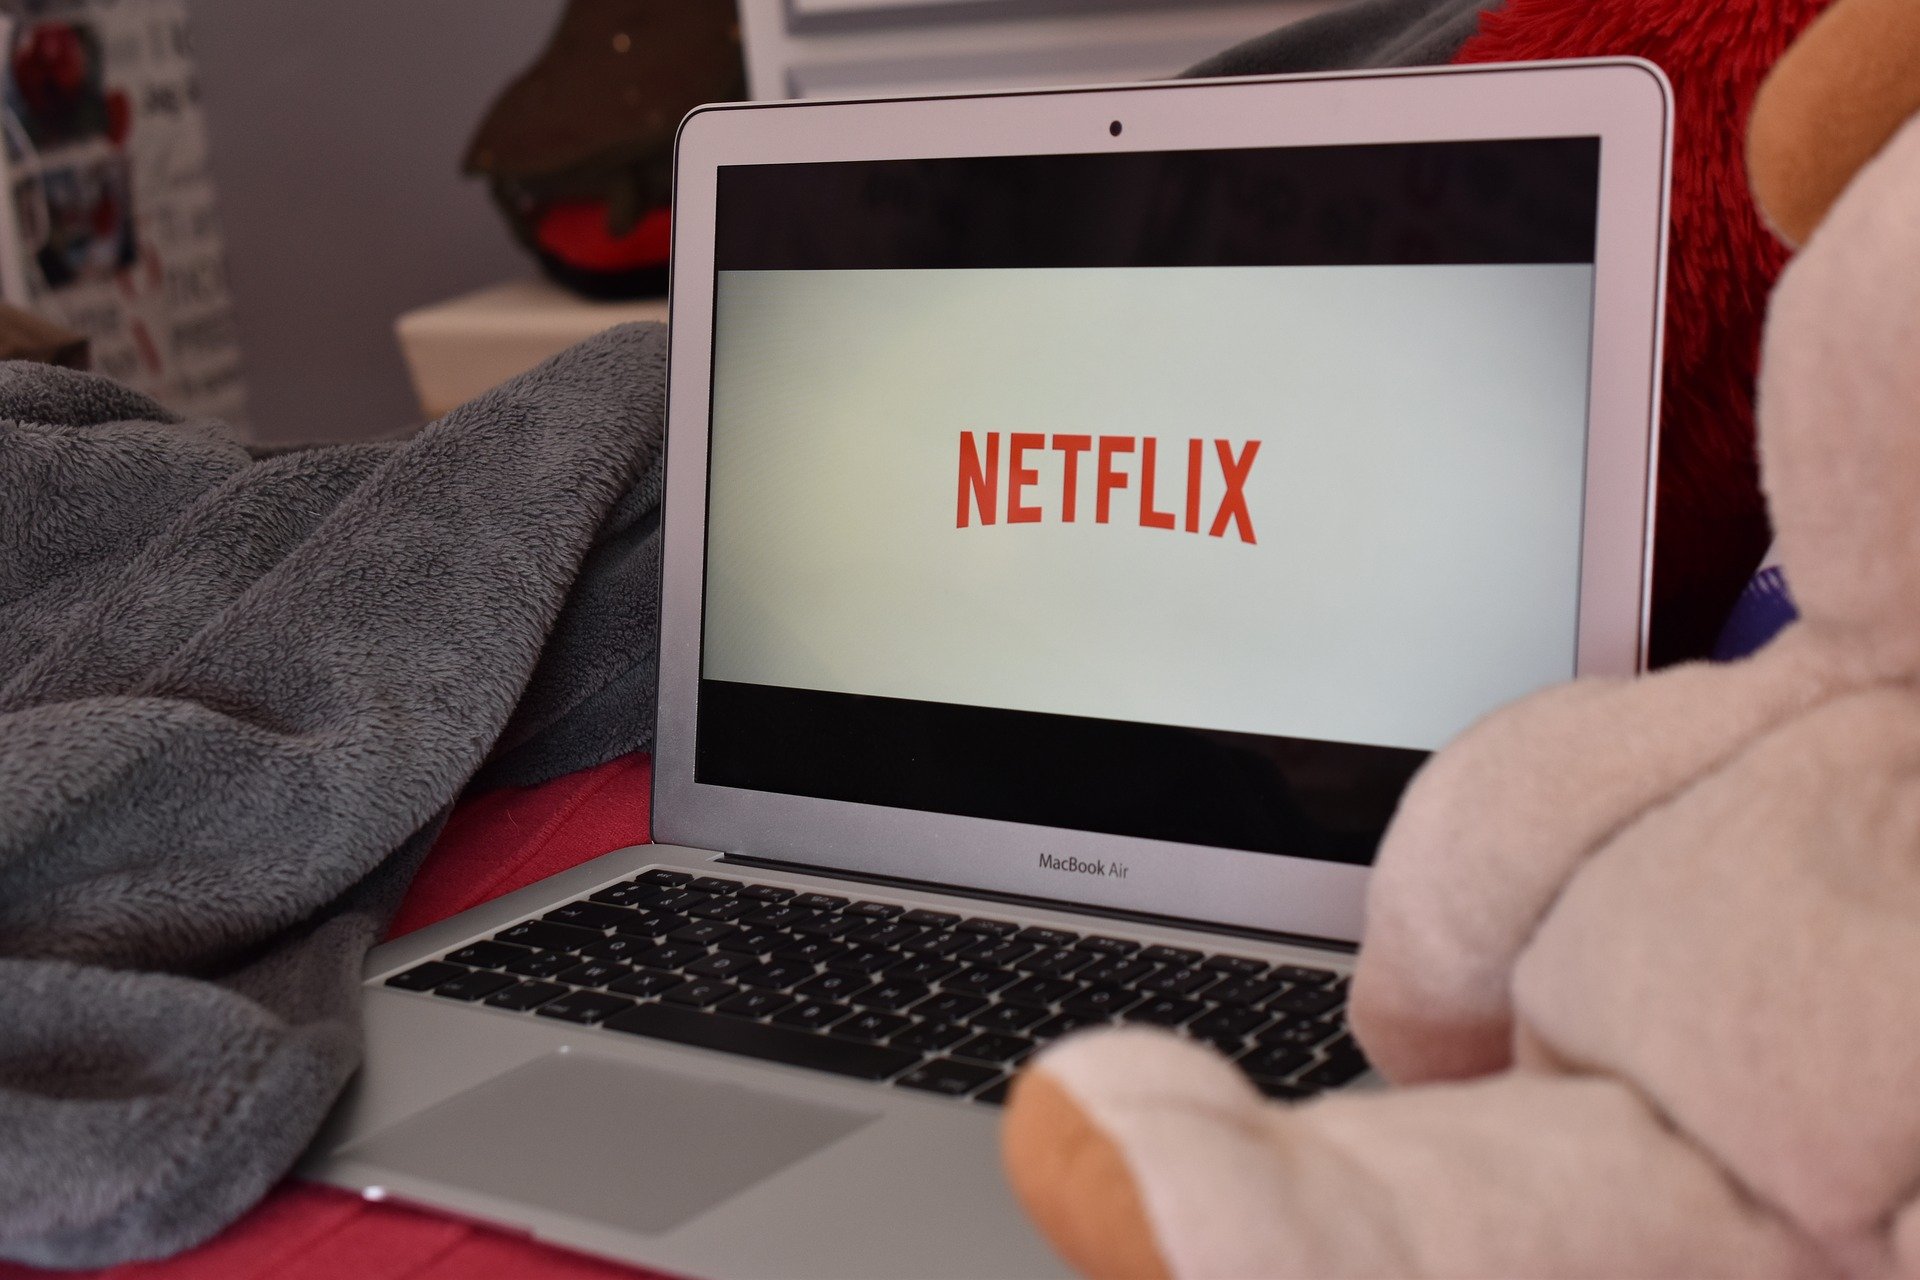 Lo que mirás en Netflix también depende de la economía